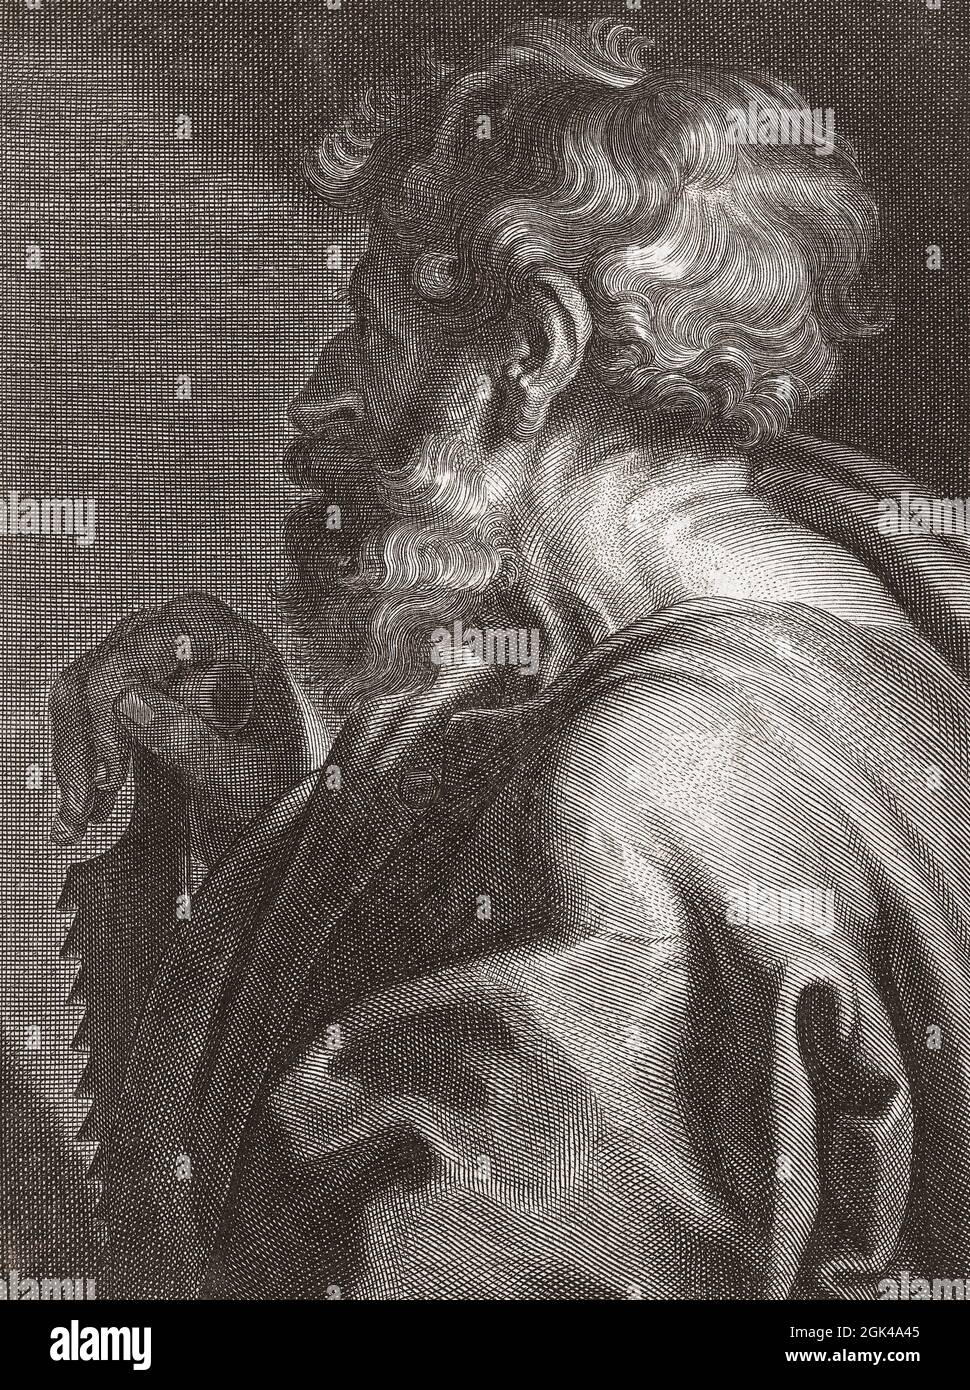 Der Apostel Simon der Zelot alias Simon der Kanaaniter oder Simon der Kanaanäer. Geboren und gestorben im 1. Jahrhundert n. Chr. Sein identifizierendes Attribut, wie in diesem Bild, ist eine Säge, die eine von mehreren Geschichten über seinen Tod unterstützt - dass er halbiert wurde. Nach einer Arbeit von Cornelis van Caukercken nach einem Gemälde von Anthony van Dyck. Stockfoto